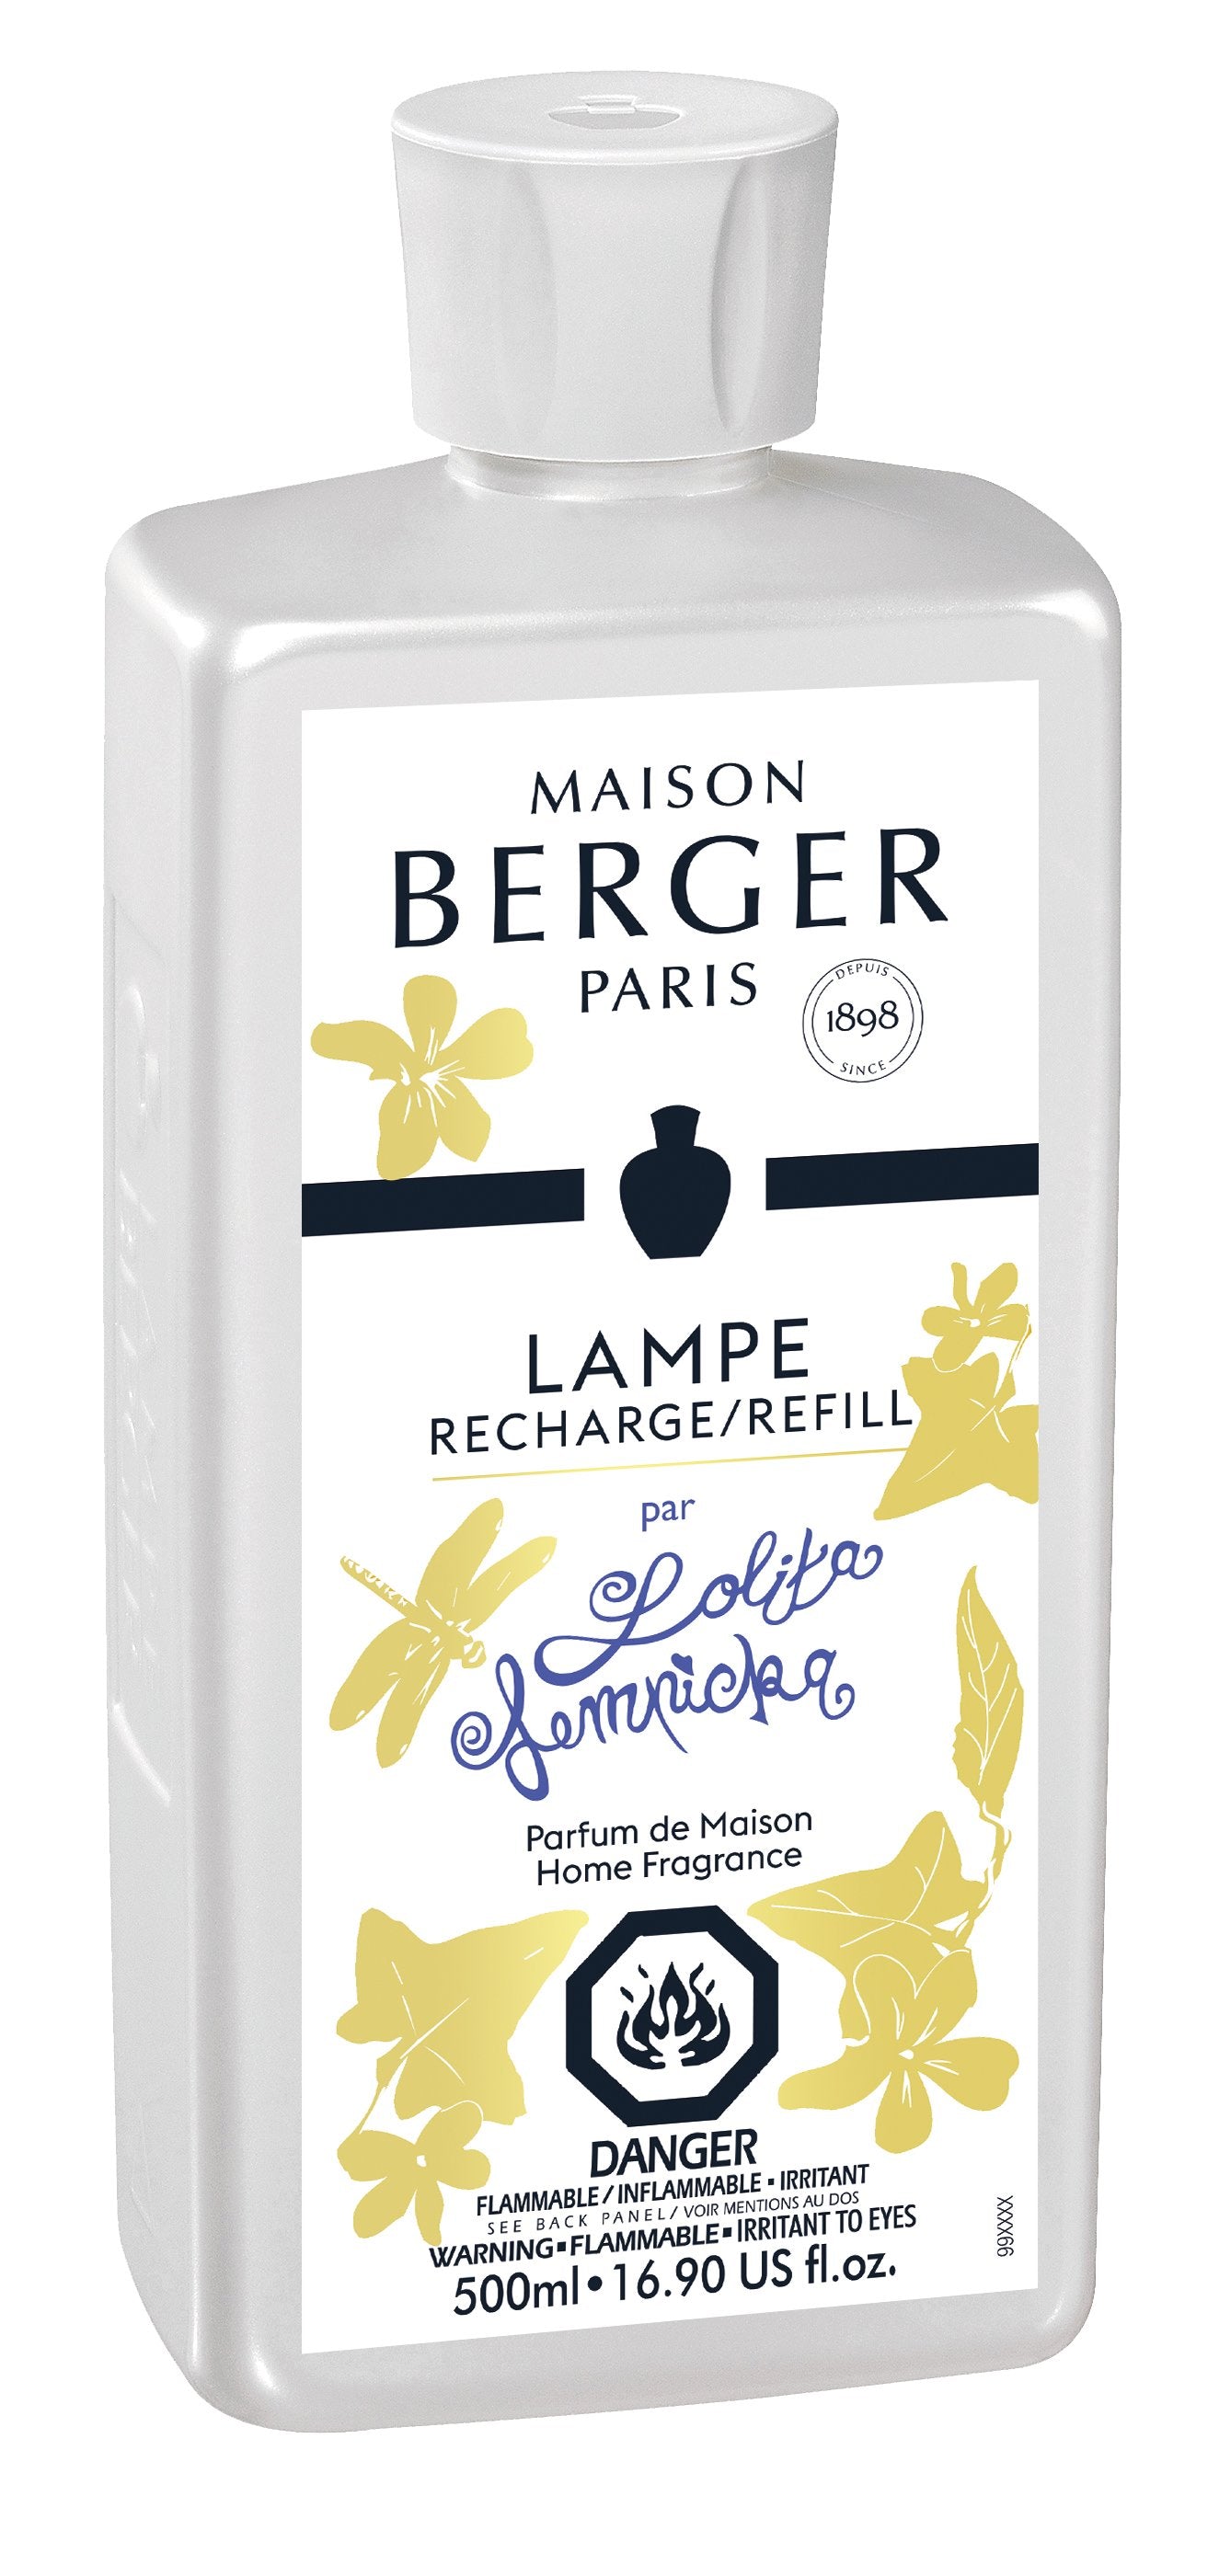 Maison Berger Paris MAISON BERGER LAMP REFILL EXQUISITE SPARKLE 500 ml